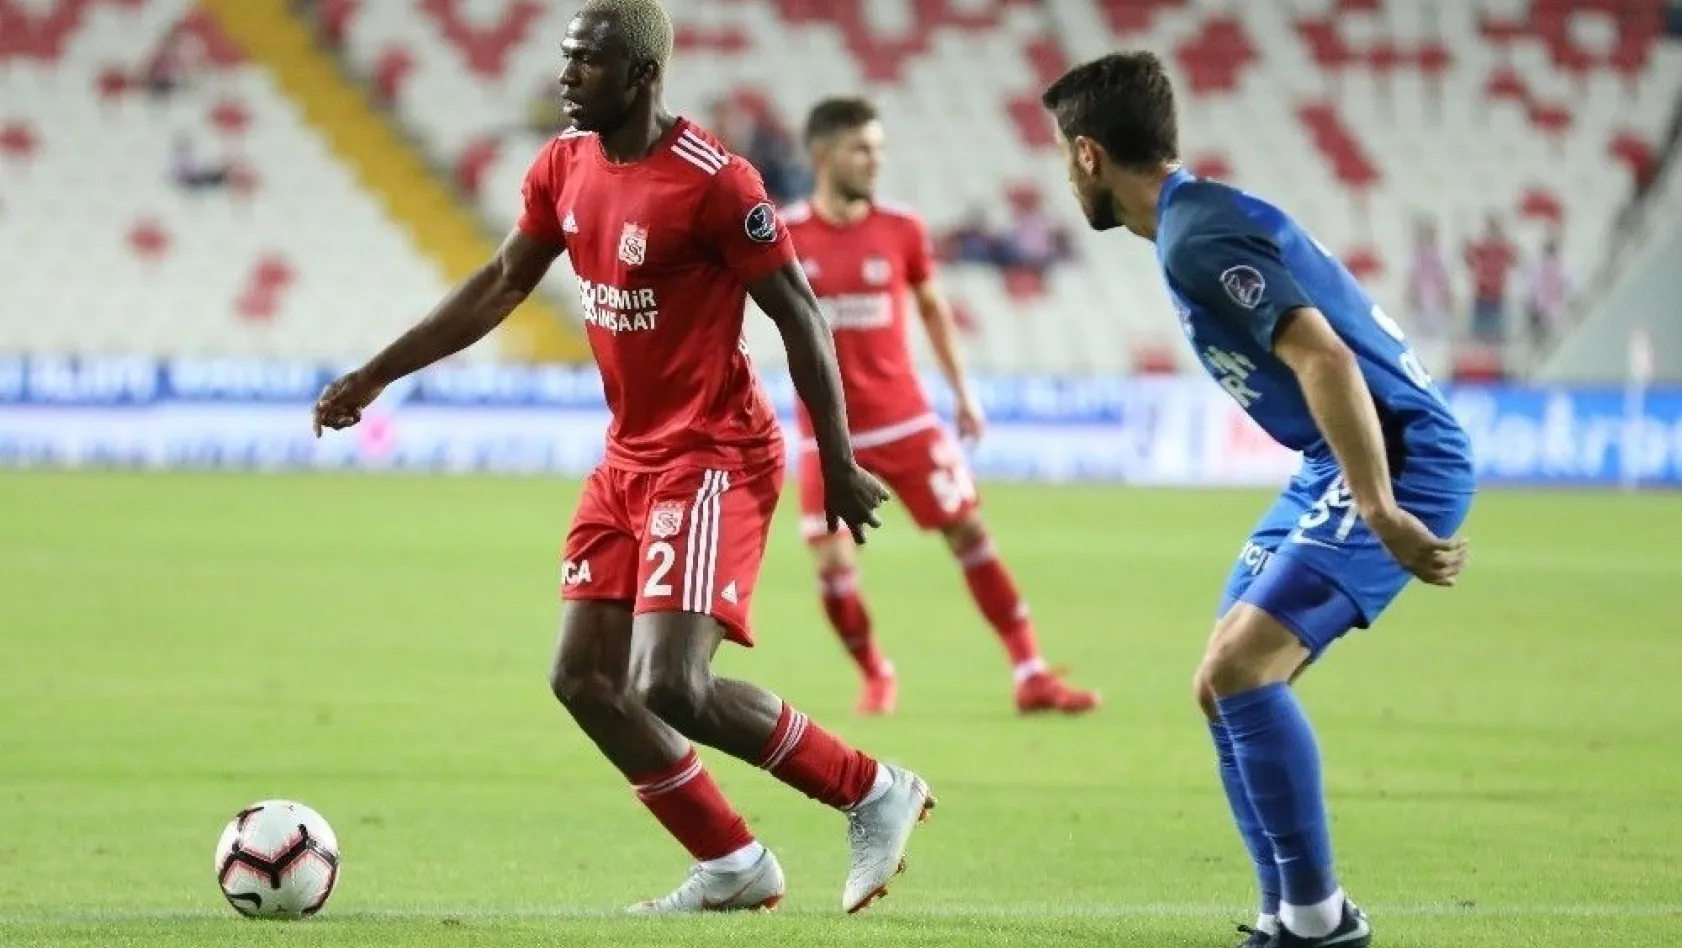 Spor Toto Süper Lig: Demir Grup Sivasspor: 0 - Kasımpaşa: 1 (İlk yarı)
